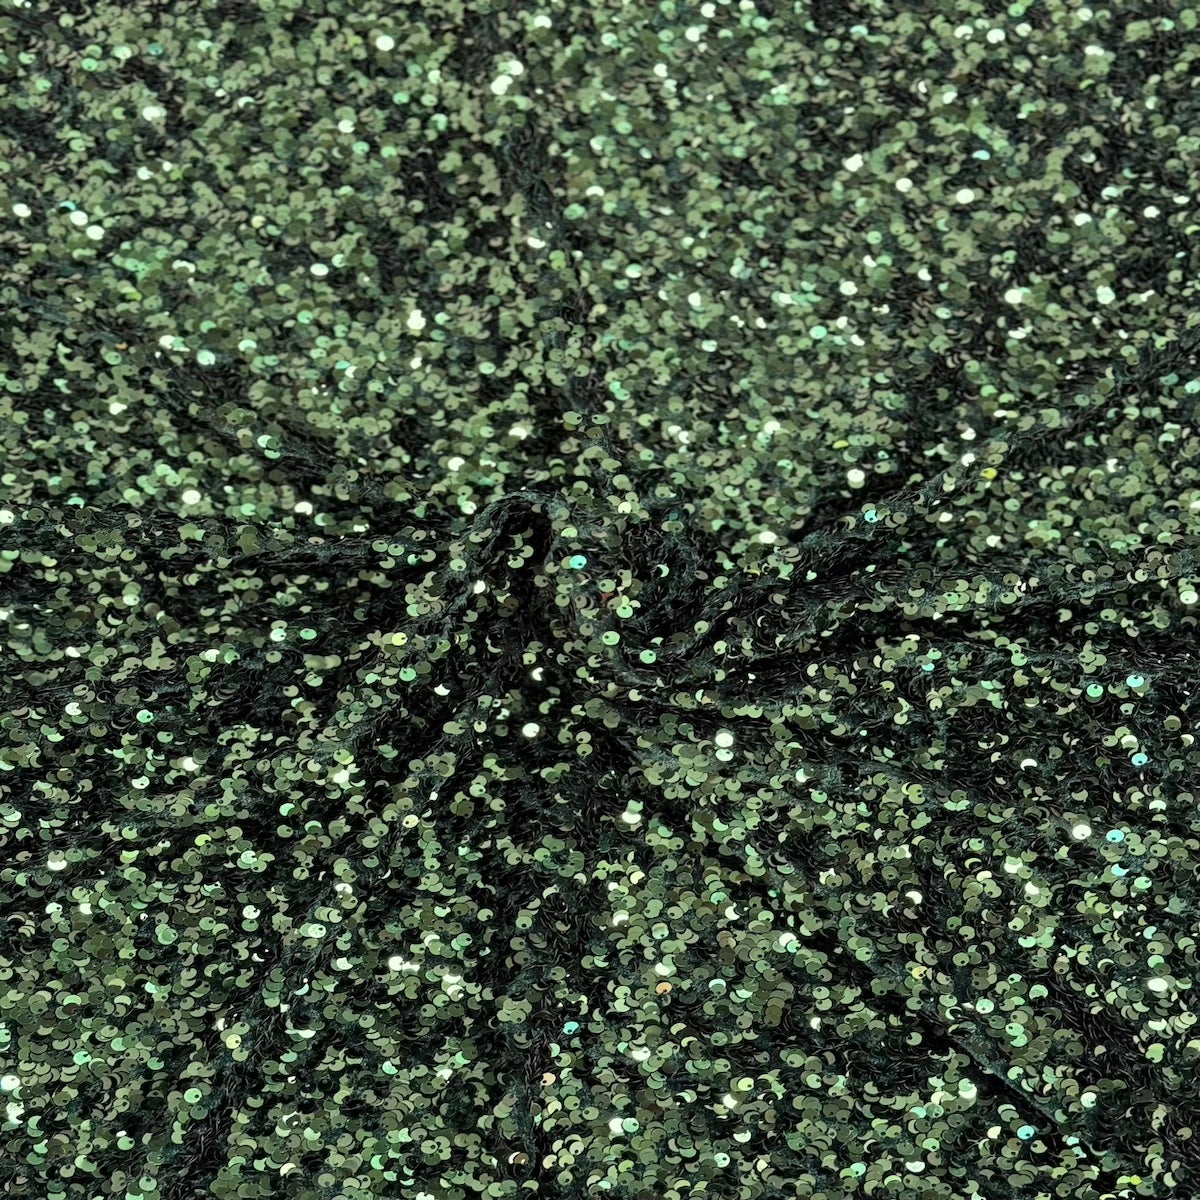 Tissu de rodéo en velours extensible brodé de paillettes vert chasseur